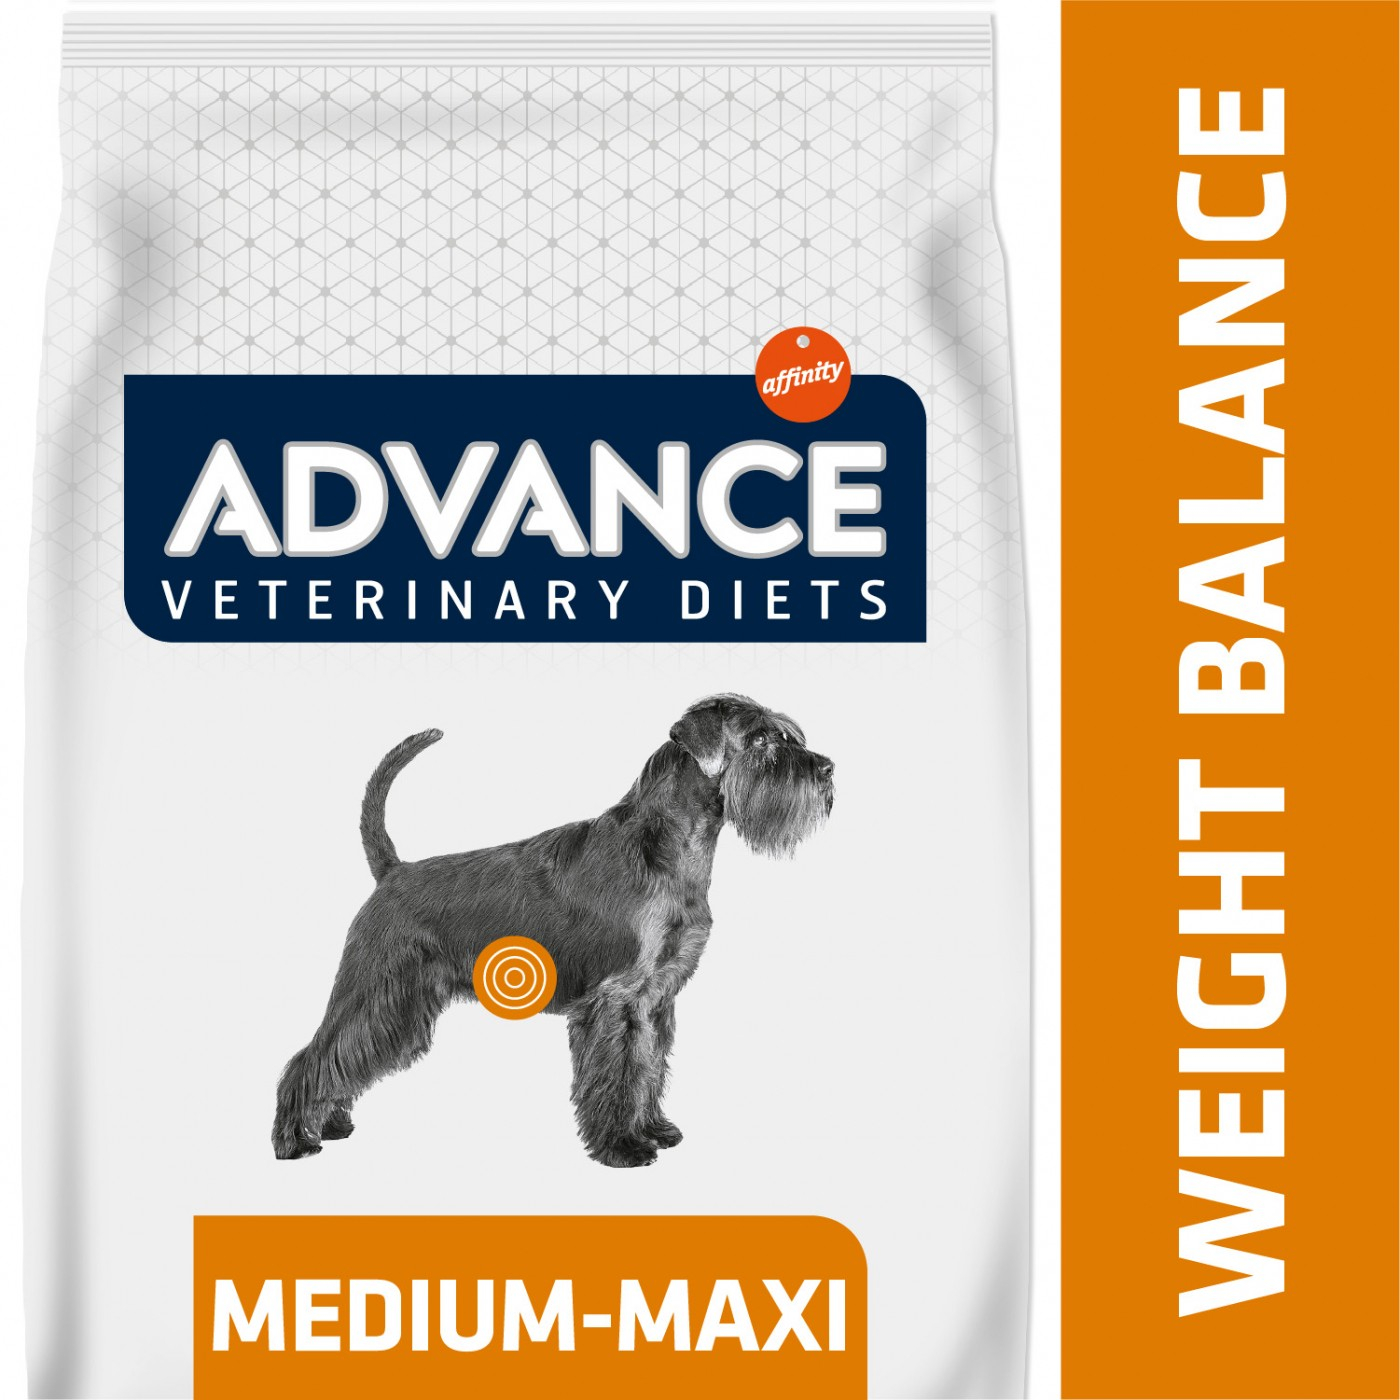 Advance Veterinary Diets Weight Balance für erwachsene Hunde